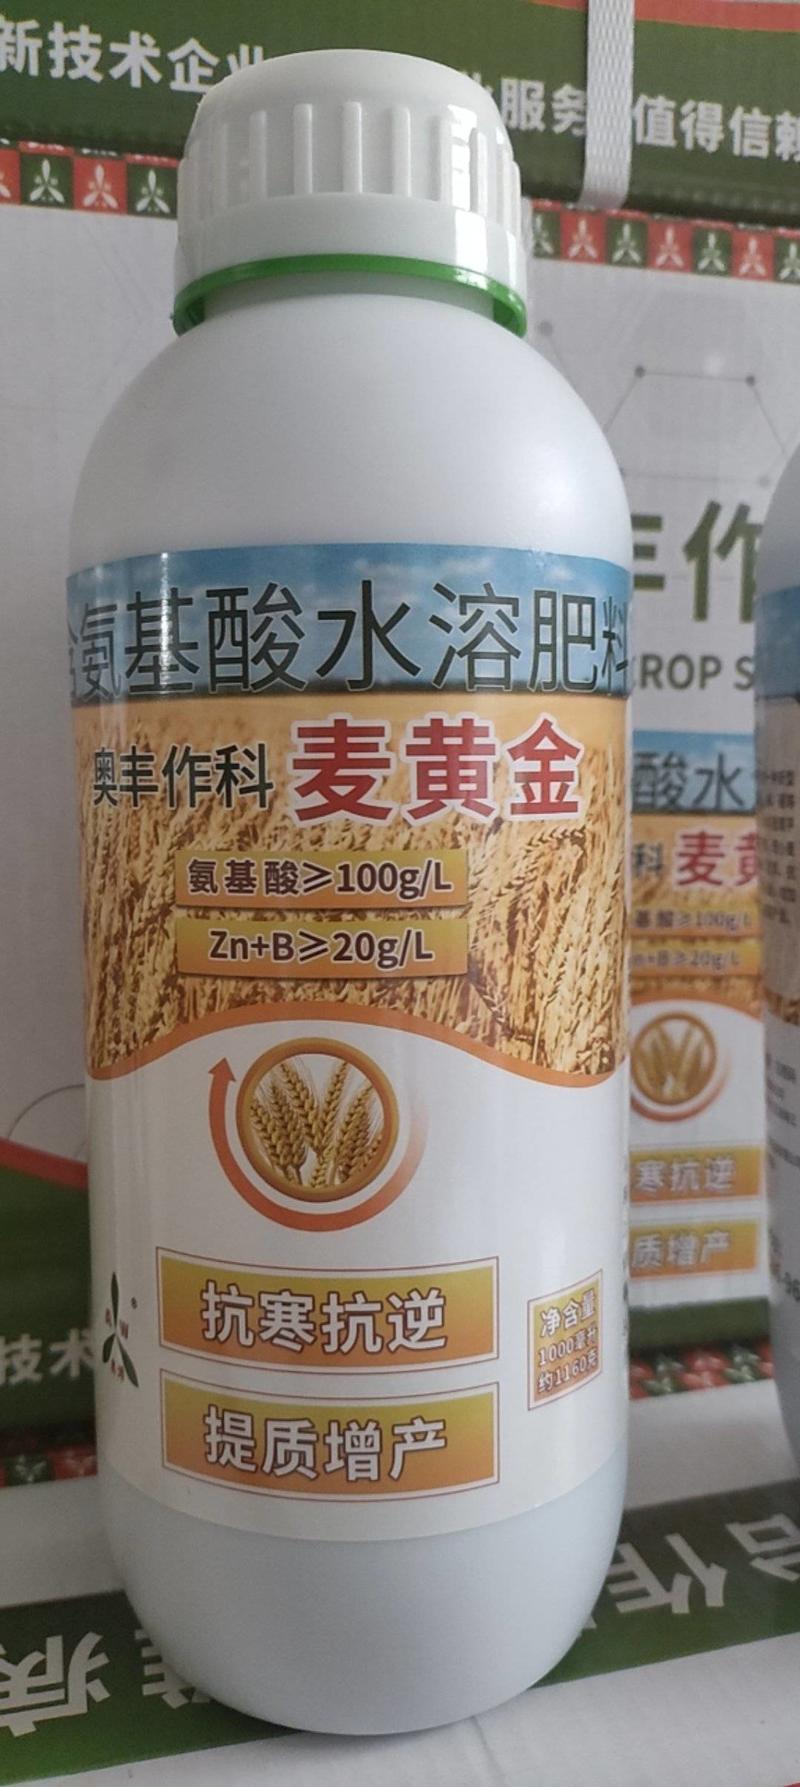 奥丰麦黄金叶面肥小麦增产肥料抗倒分蘖籽粒饱满正品农用水溶